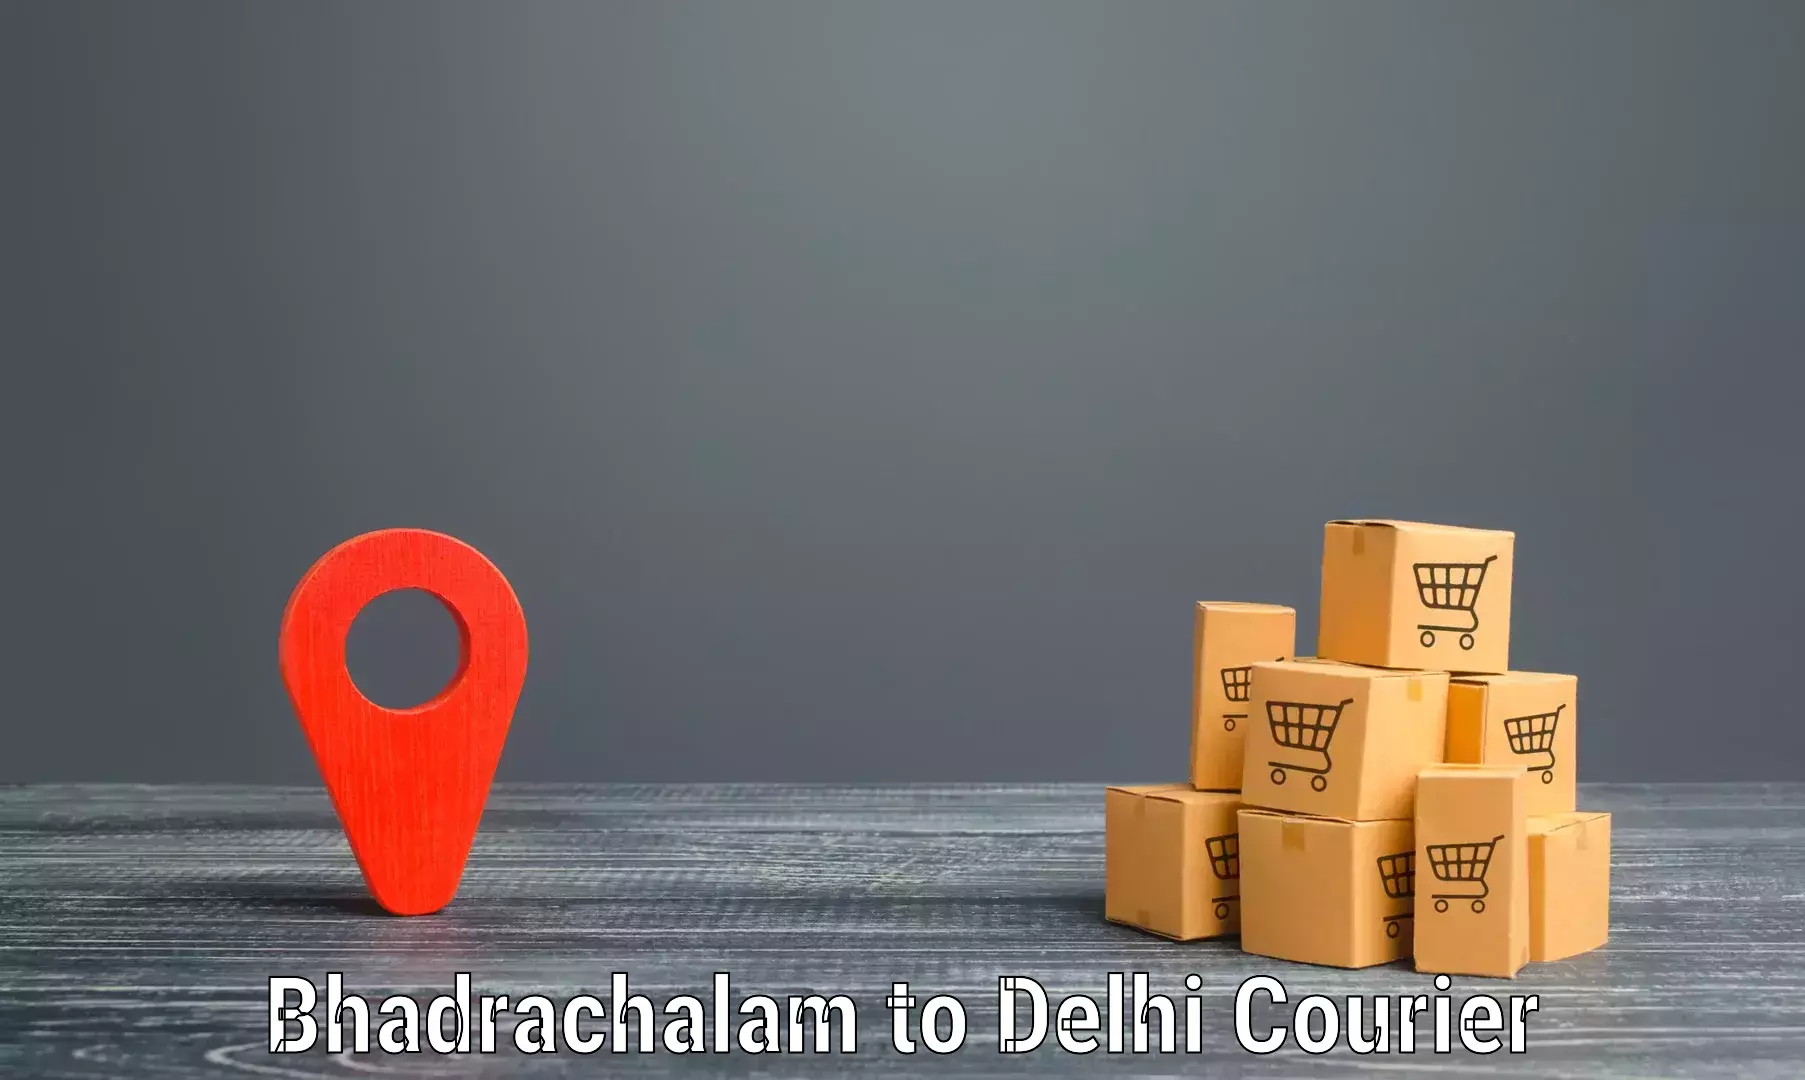 Global logistics network Bhadrachalam to Jawaharlal Nehru University New Delhi